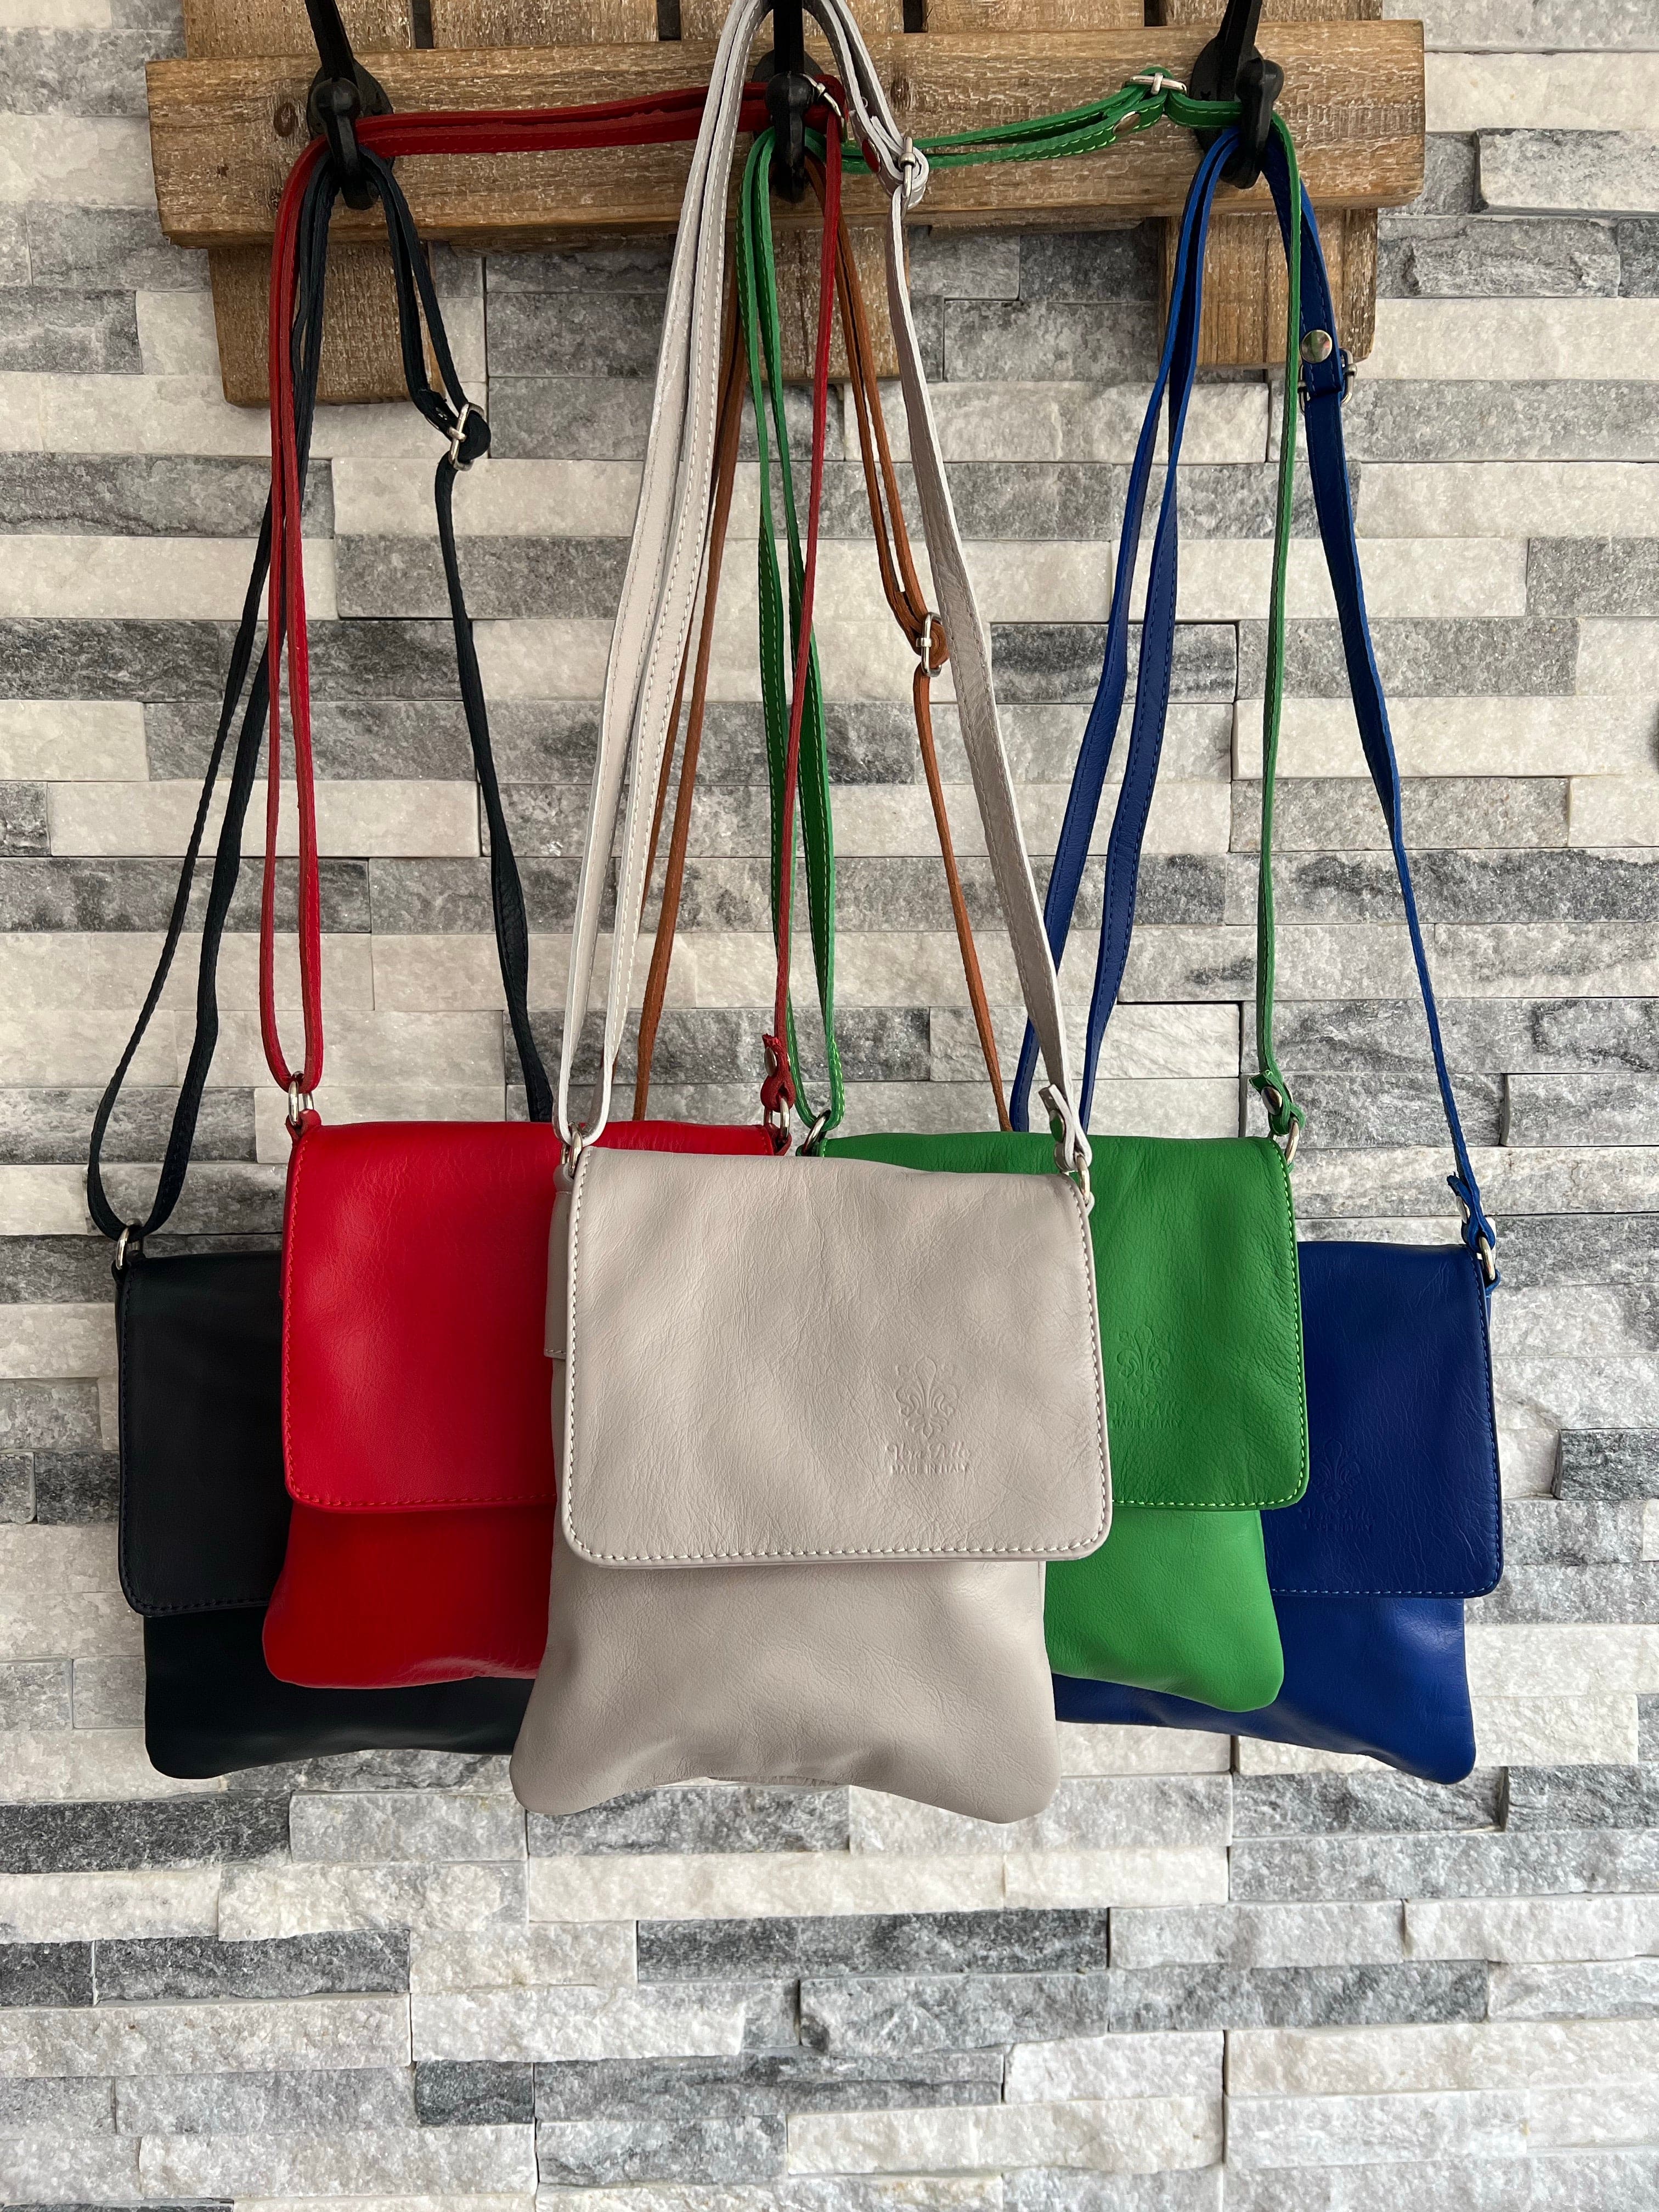 Italian Soft Leather Purses Sale Online | bellvalefarms.com